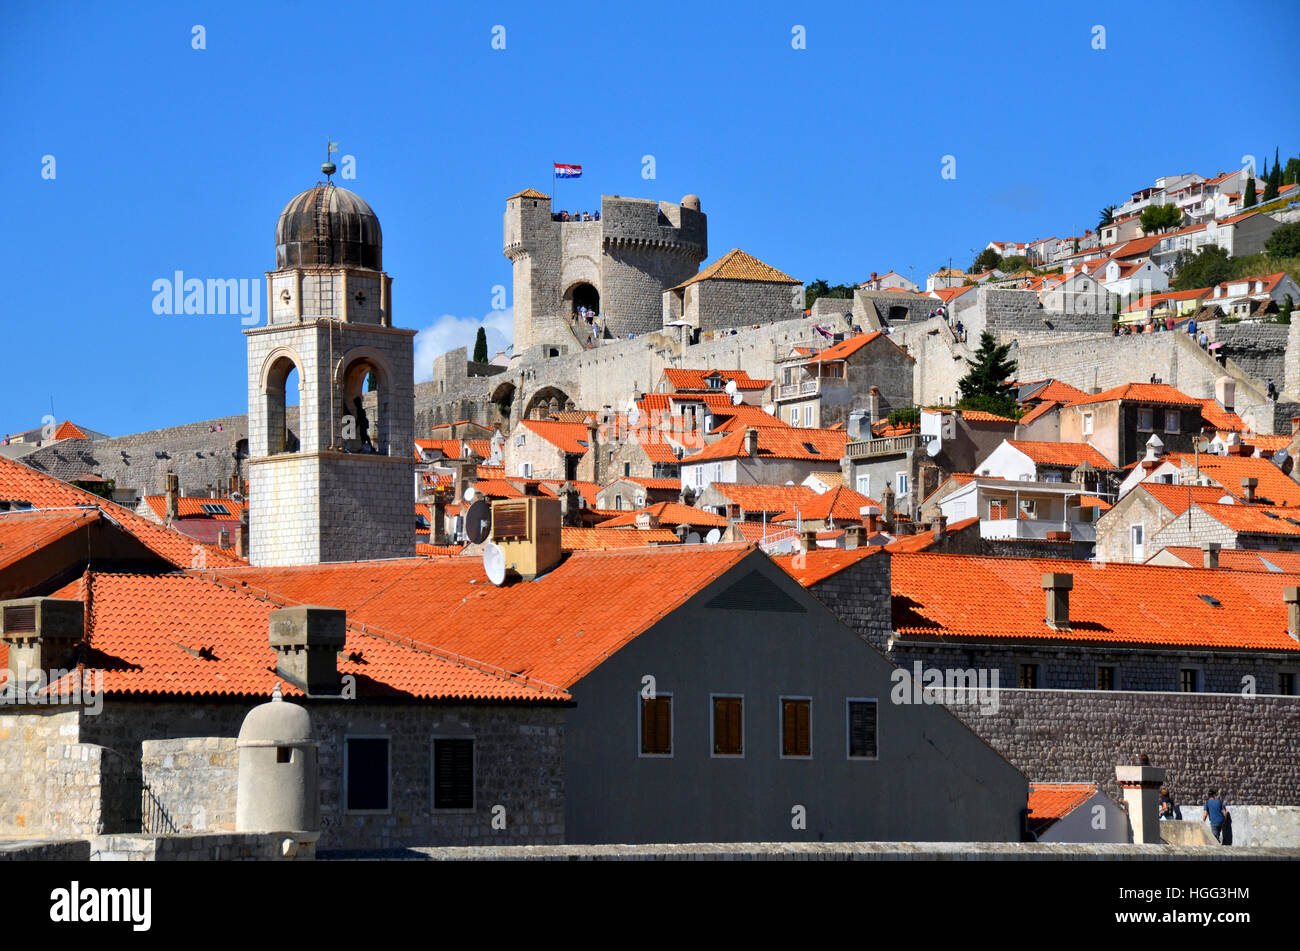 Les toits de tuiles rouges de la ville de Dubrovnik, Croatie, y compris la ville de la tour du clocher et Tour Minceta. Banque D'Images